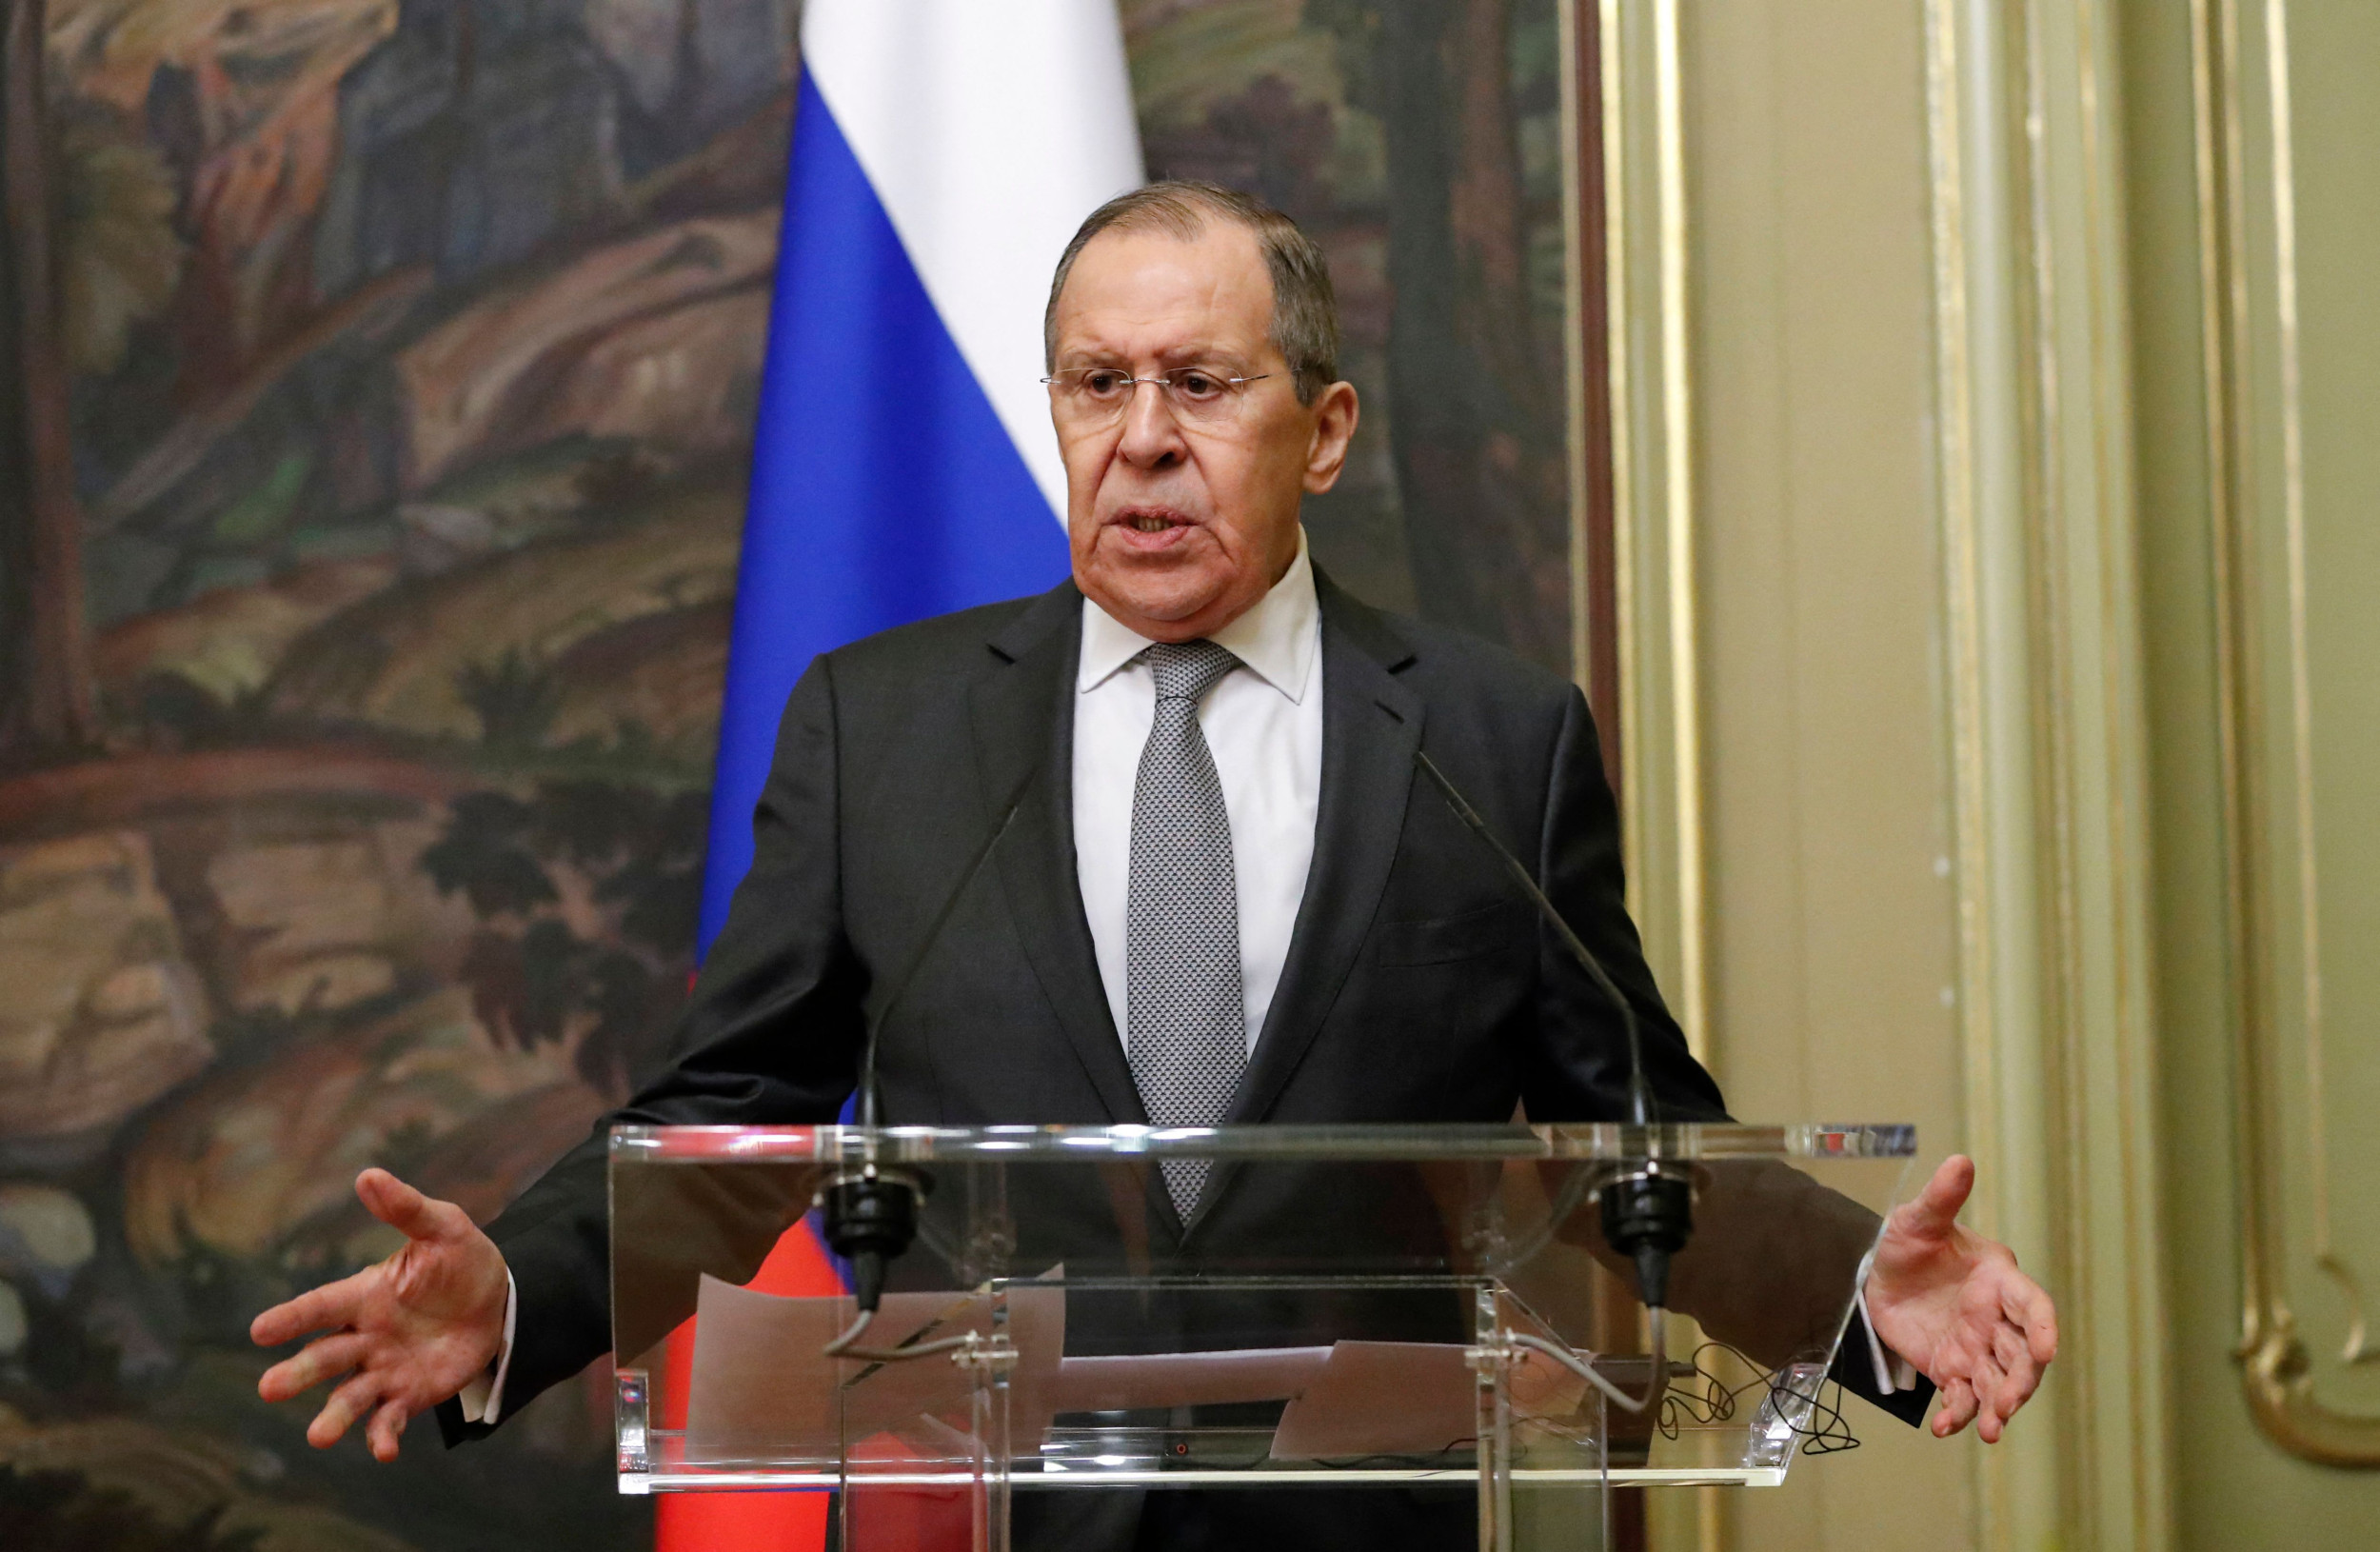 Las declaraciones del aliado de Putin hacen temer una invasión rusa de otro país europeo